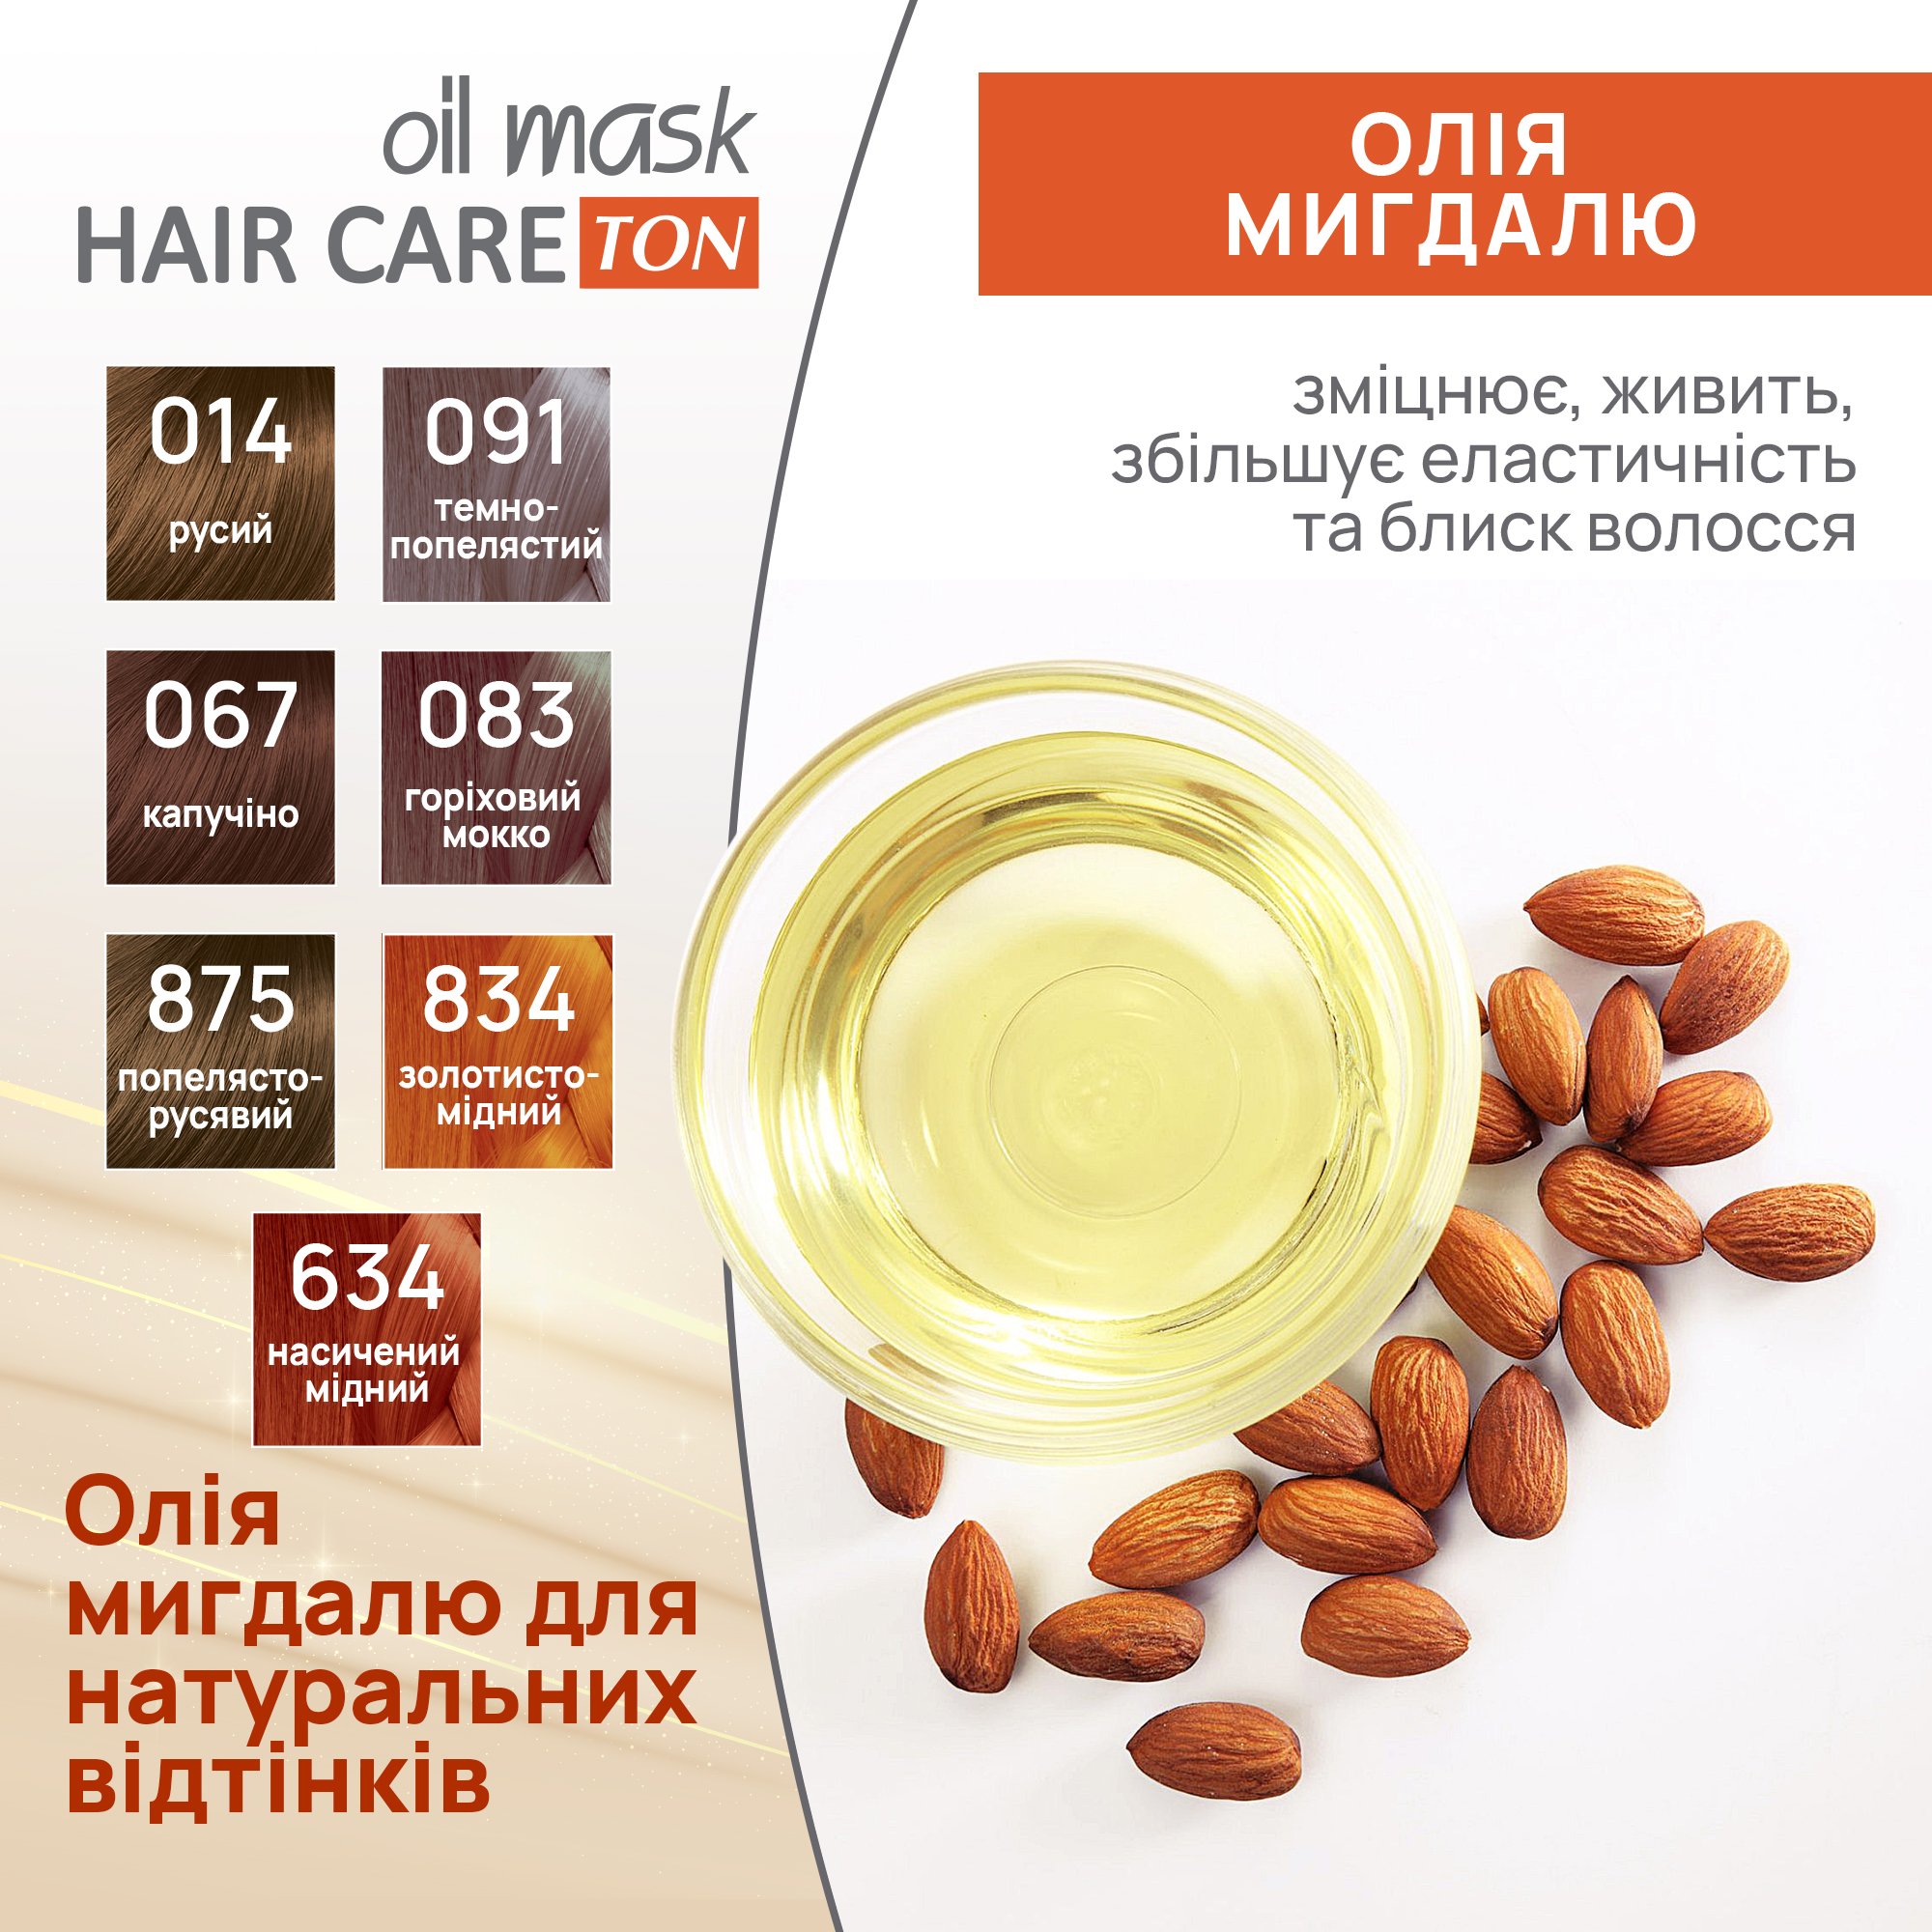 Тонуюча маска для волосся Acme Color Hair Care Ton oil mask, відтінок 834, золотисто-мідний, 30 мл - фото 6